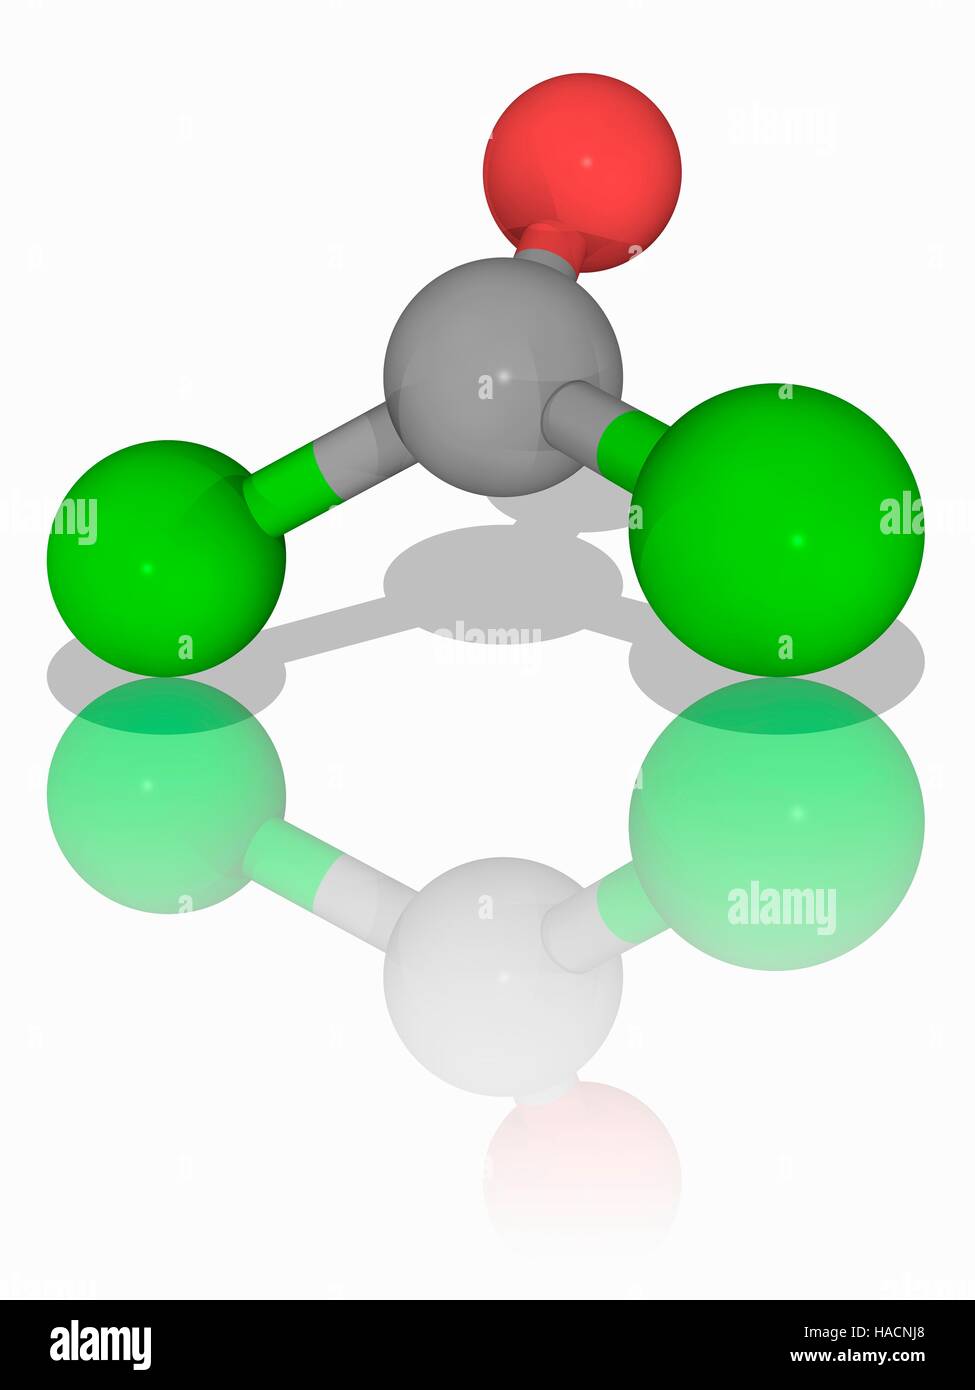 El fosgeno. Modelo molecular de los compuestos inorgánicos el fosgeno  (C.O.Cl2). Un gas incoloro, mató a decenas de miles de personas durante su  uso como arma química en la Primera Guerra Mundial.